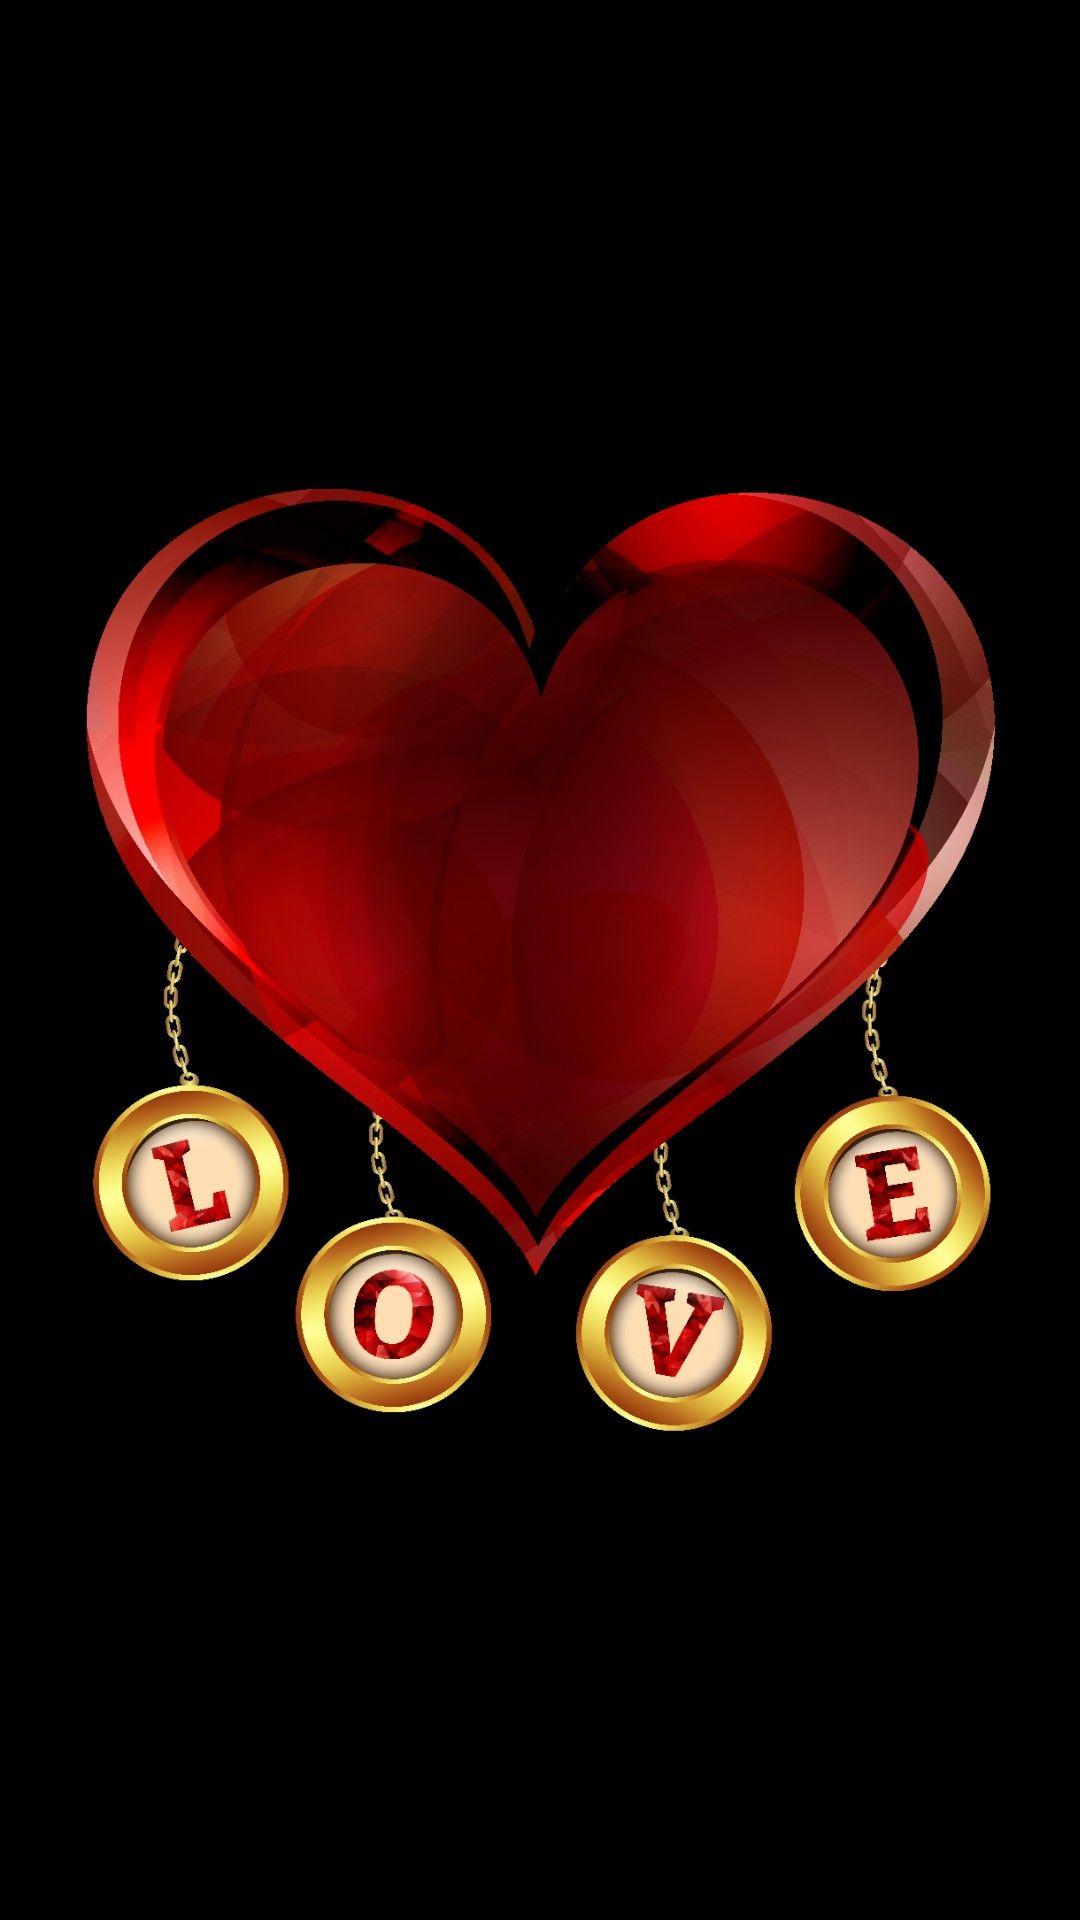 Heart love mobile wallpaper. Love wallpaper, Heart